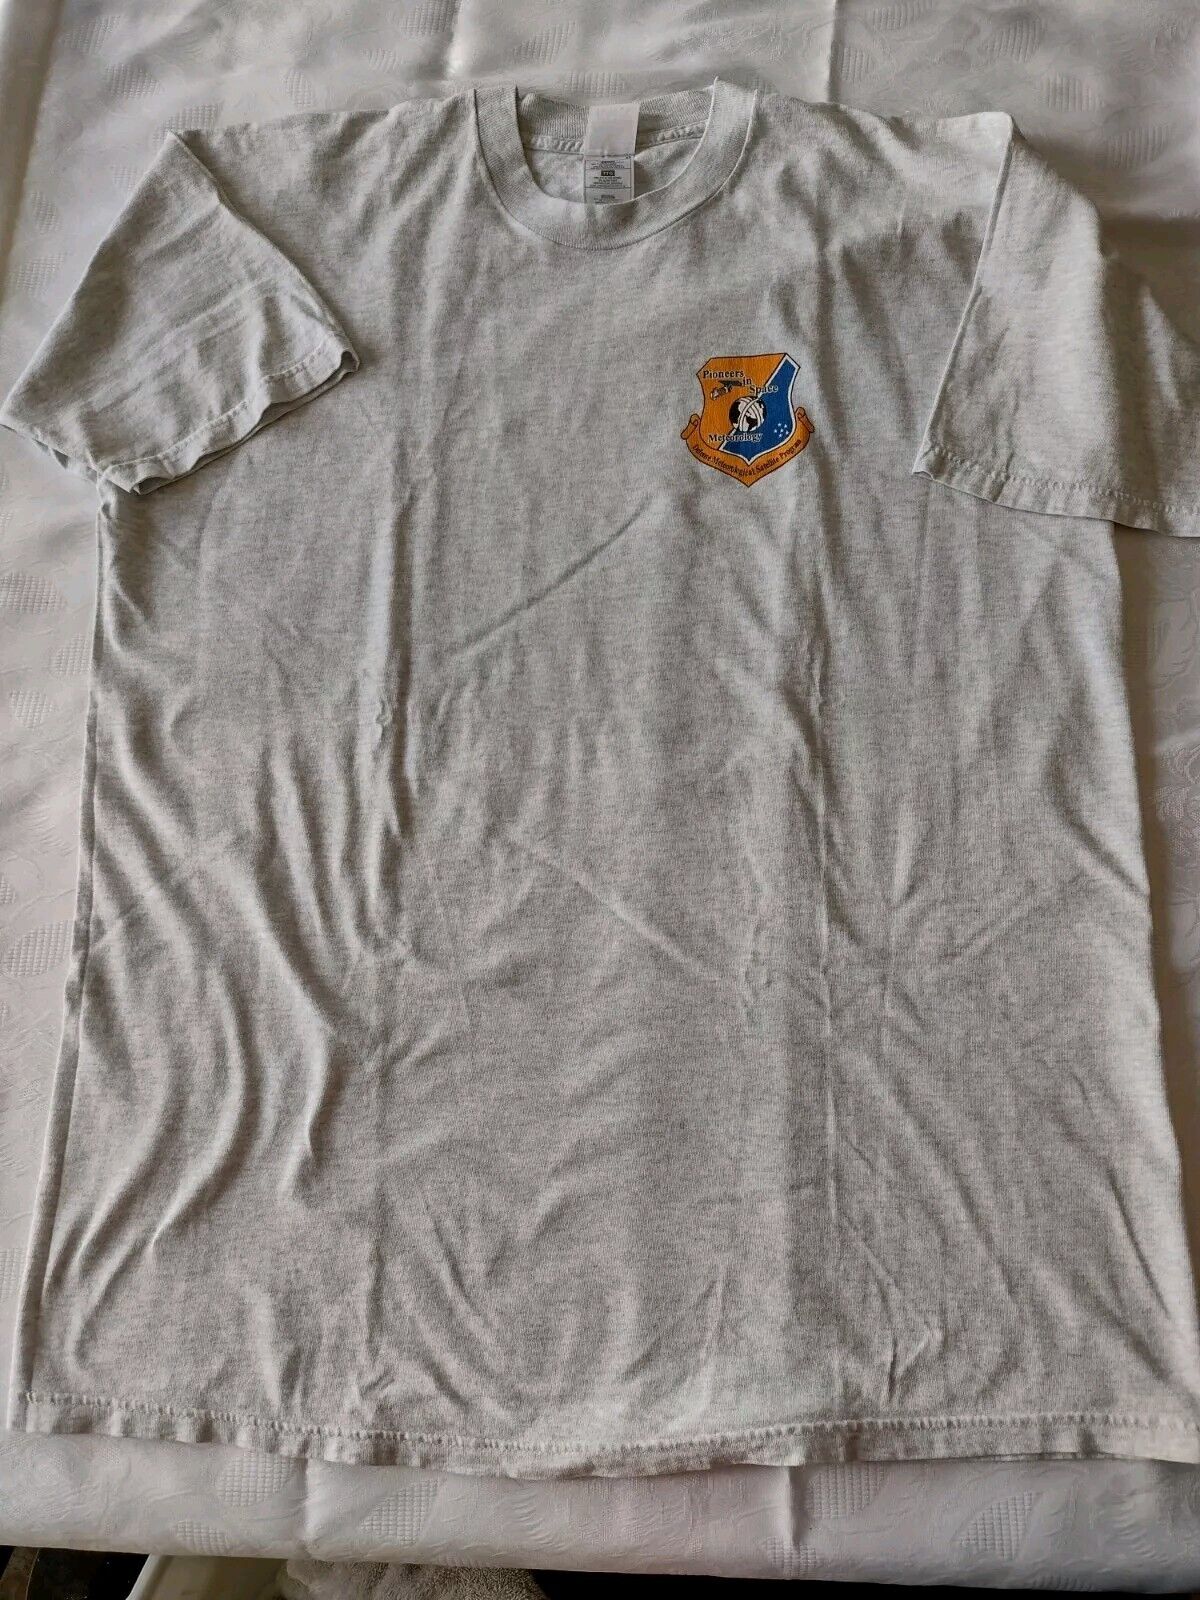 Vintage USAF Defense Meteorological Satellite Program (DMSP) T-shirt